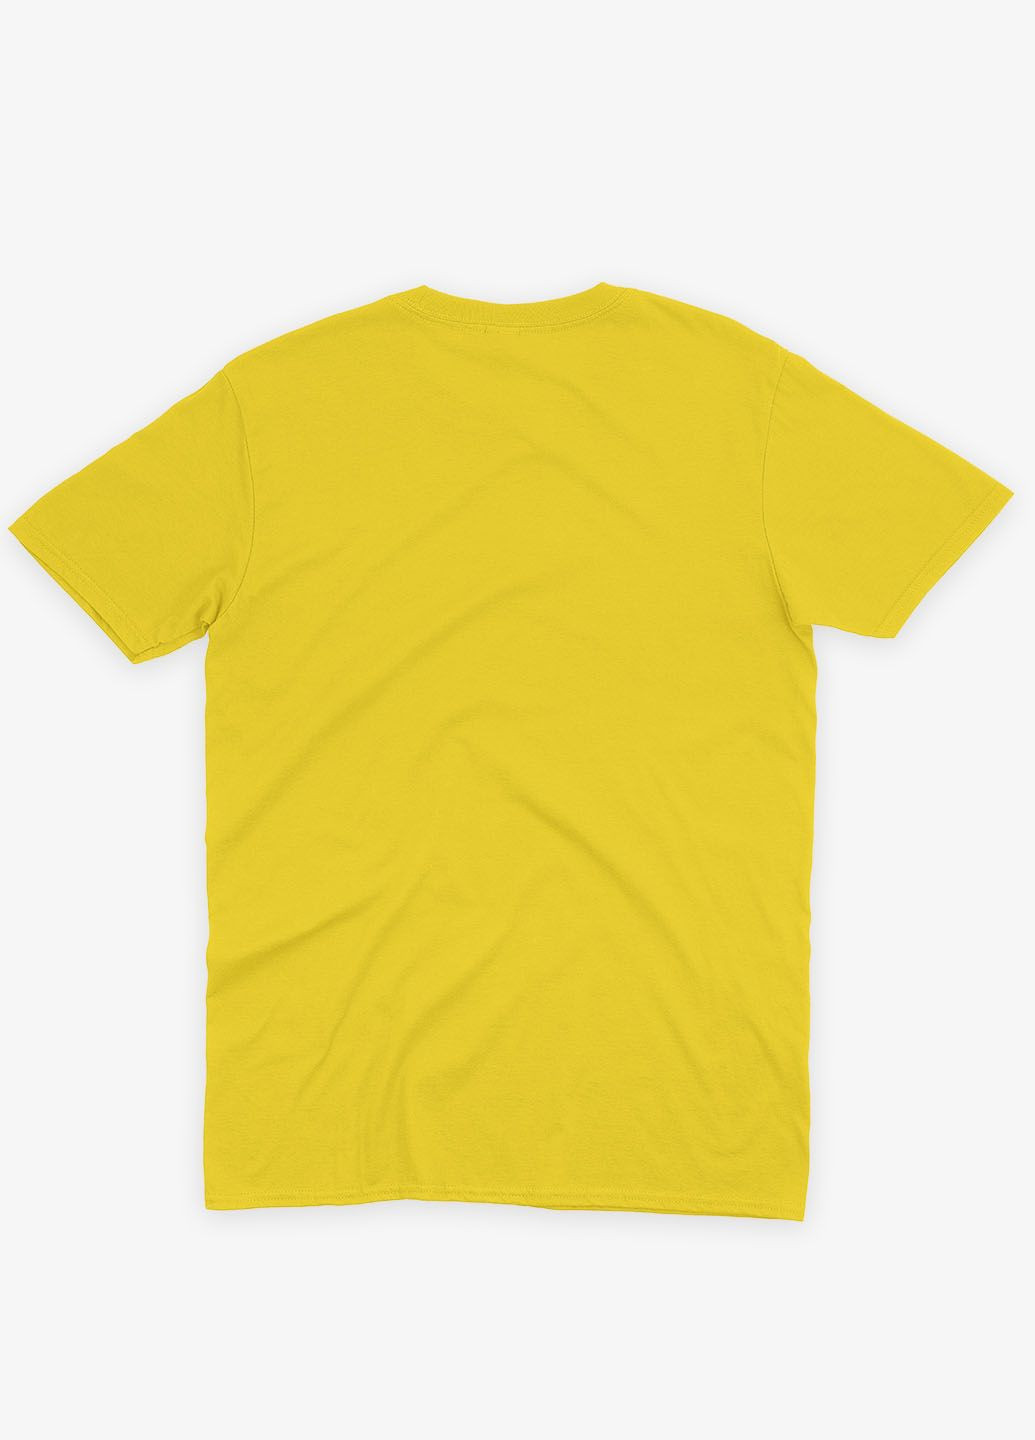 Желтая демисезонная футболка для девочки с патриотическим принтом карта украины (ts001-1-sun-005-1-004-g) Modno